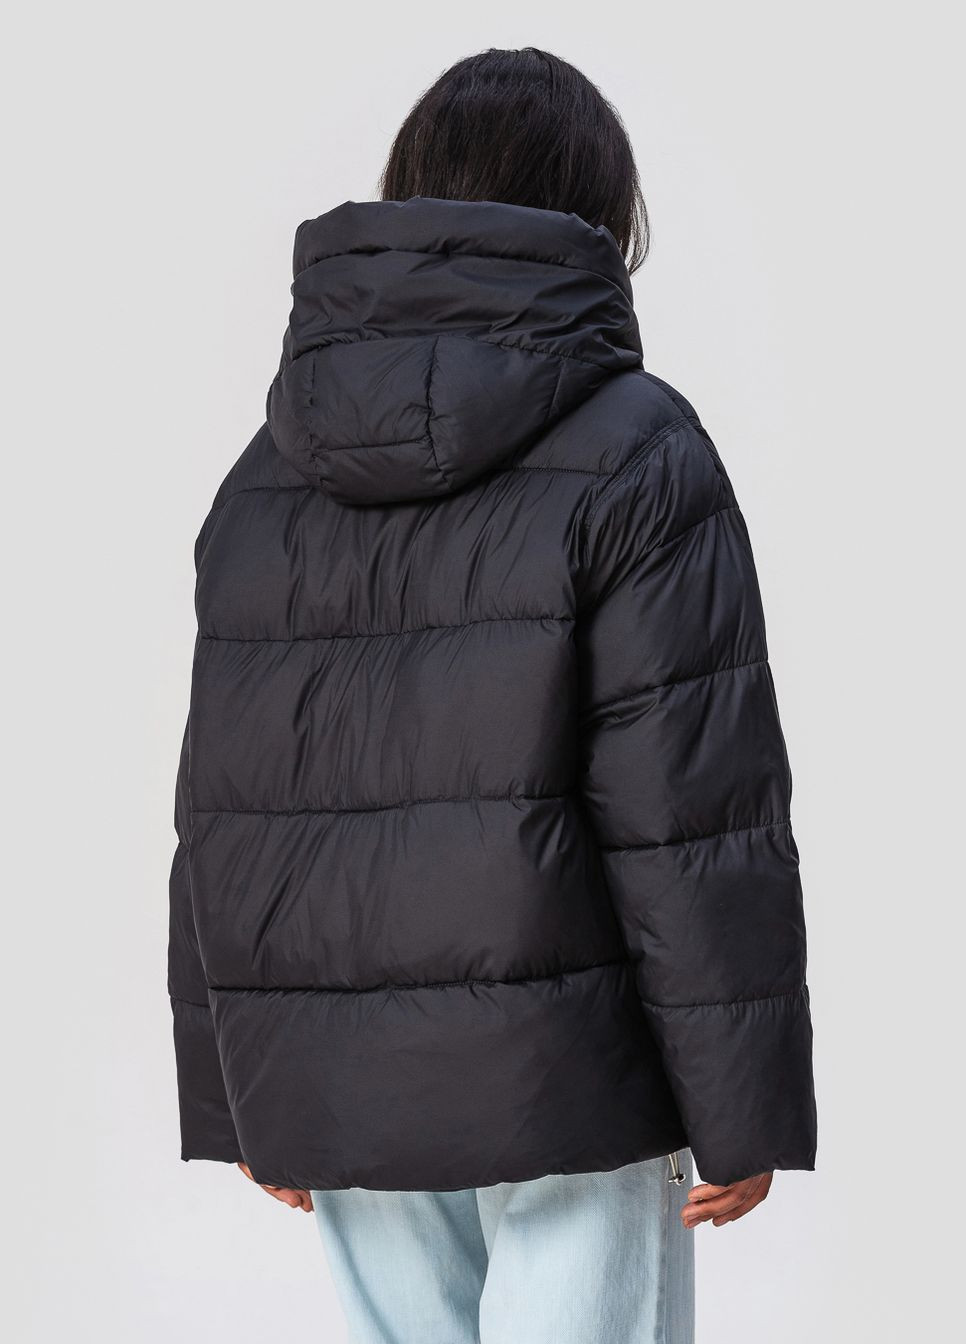 Черная зимняя куртка с капюшоном модель 3185 Visdeer